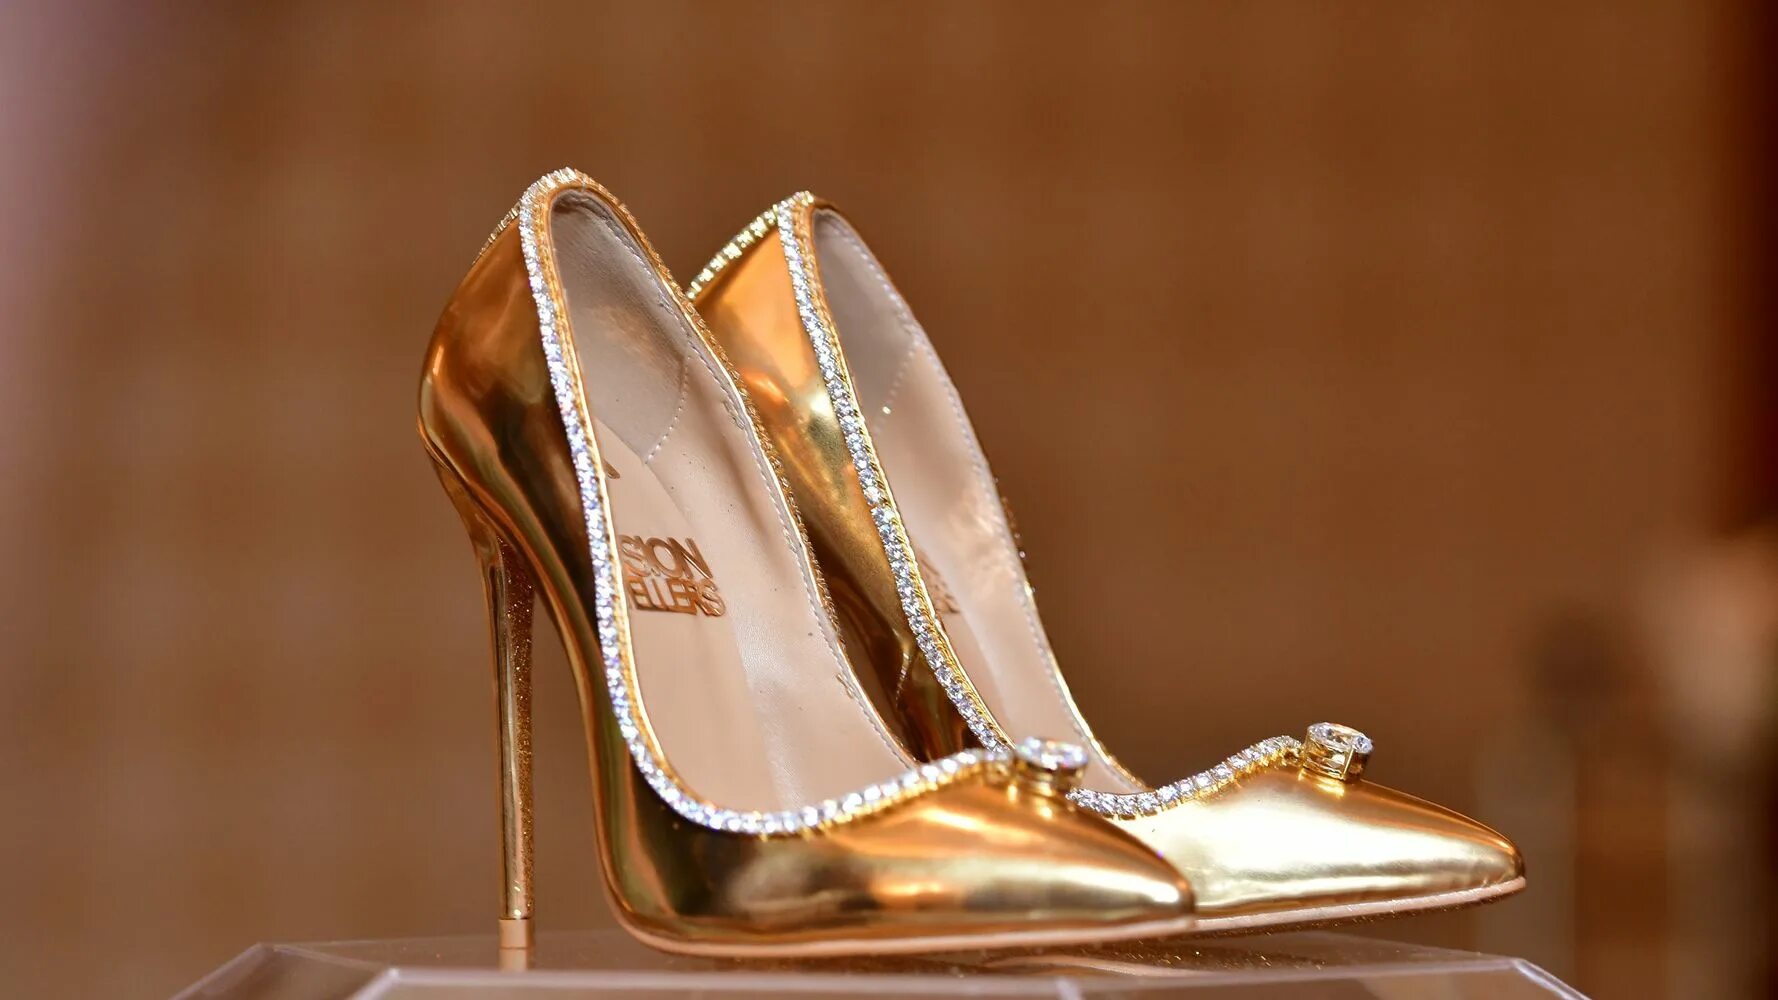 Expensive gold. Туфли Пэшион Даймонд. Золотые туфли Jimmy Choo. Jada Dubai туфли. Jada Dubai passion Diamond Shoes.